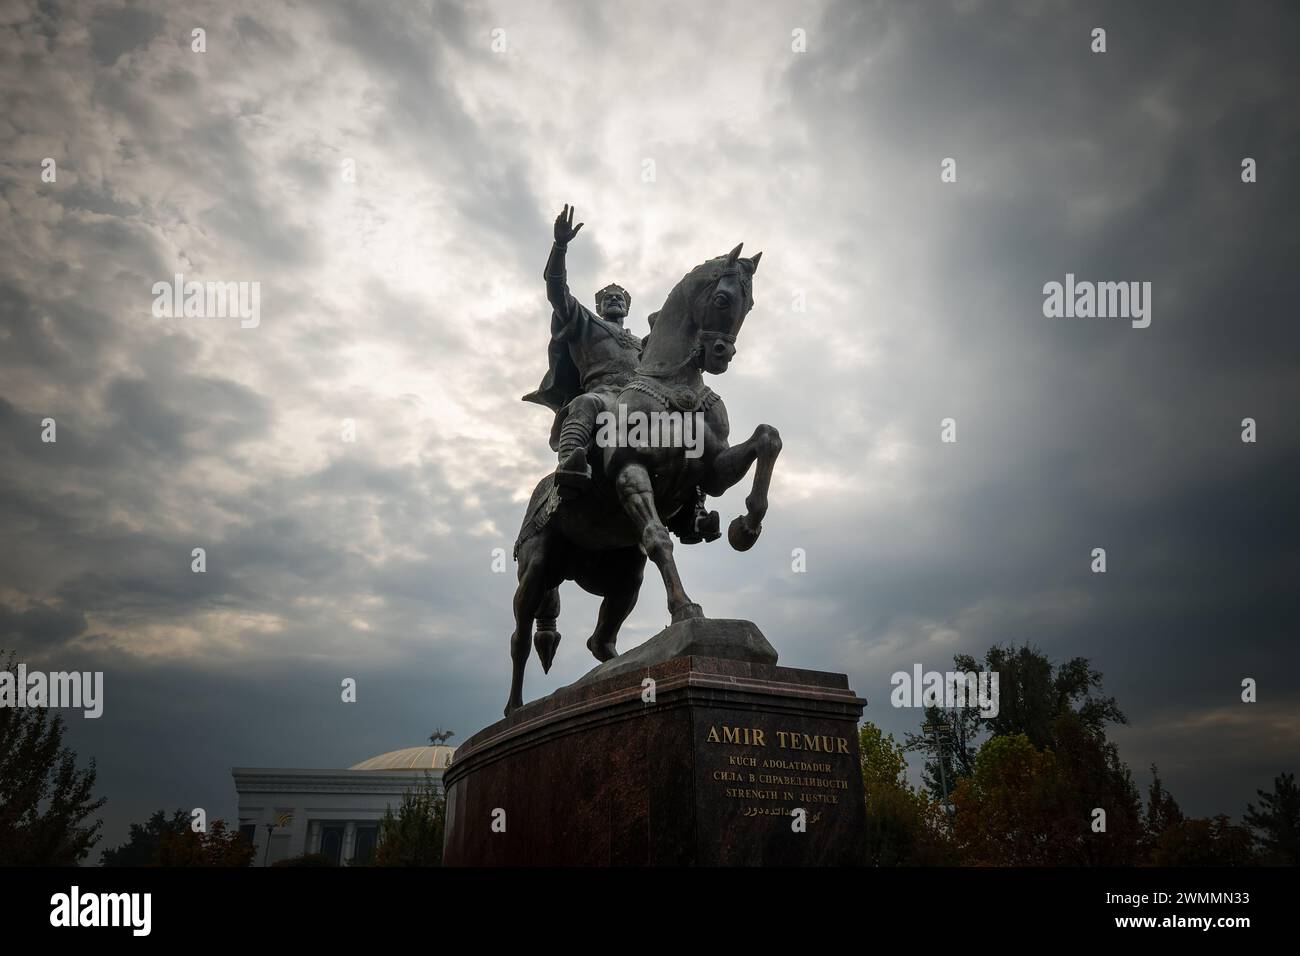 Statue du légendaire Tamerlan Amir Temur à cheval à Tachkent, Ouzbékistan. Nuages dramatiques, journée ensoleillée. Tachkent, Ouzbékistan - 27 octobre 2023 Banque D'Images